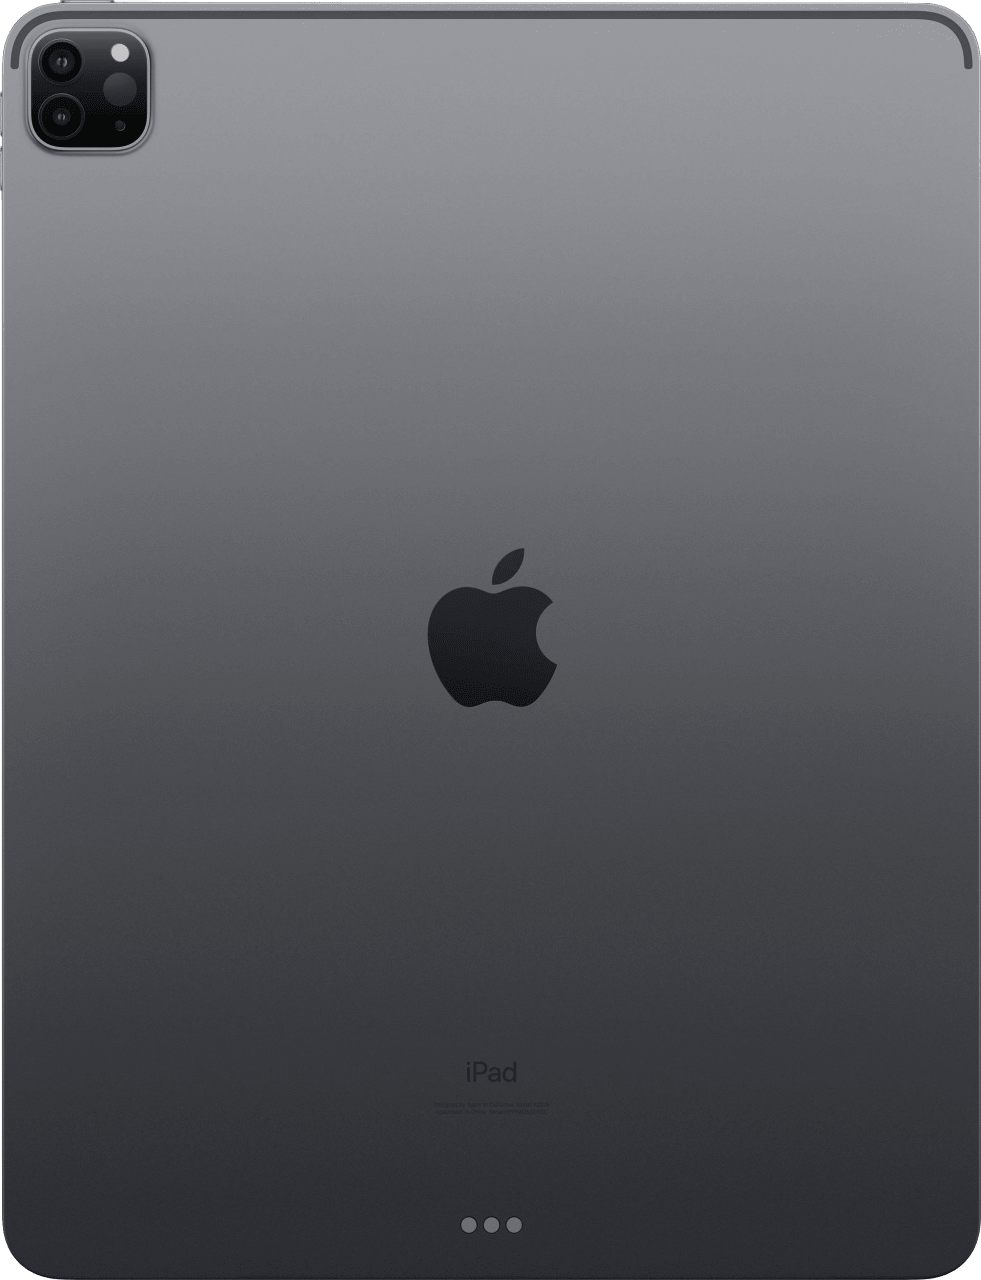 Space Grey Apple 12.9" iPad Pro (2020) - WiFi - iOS14 - 128GB.4